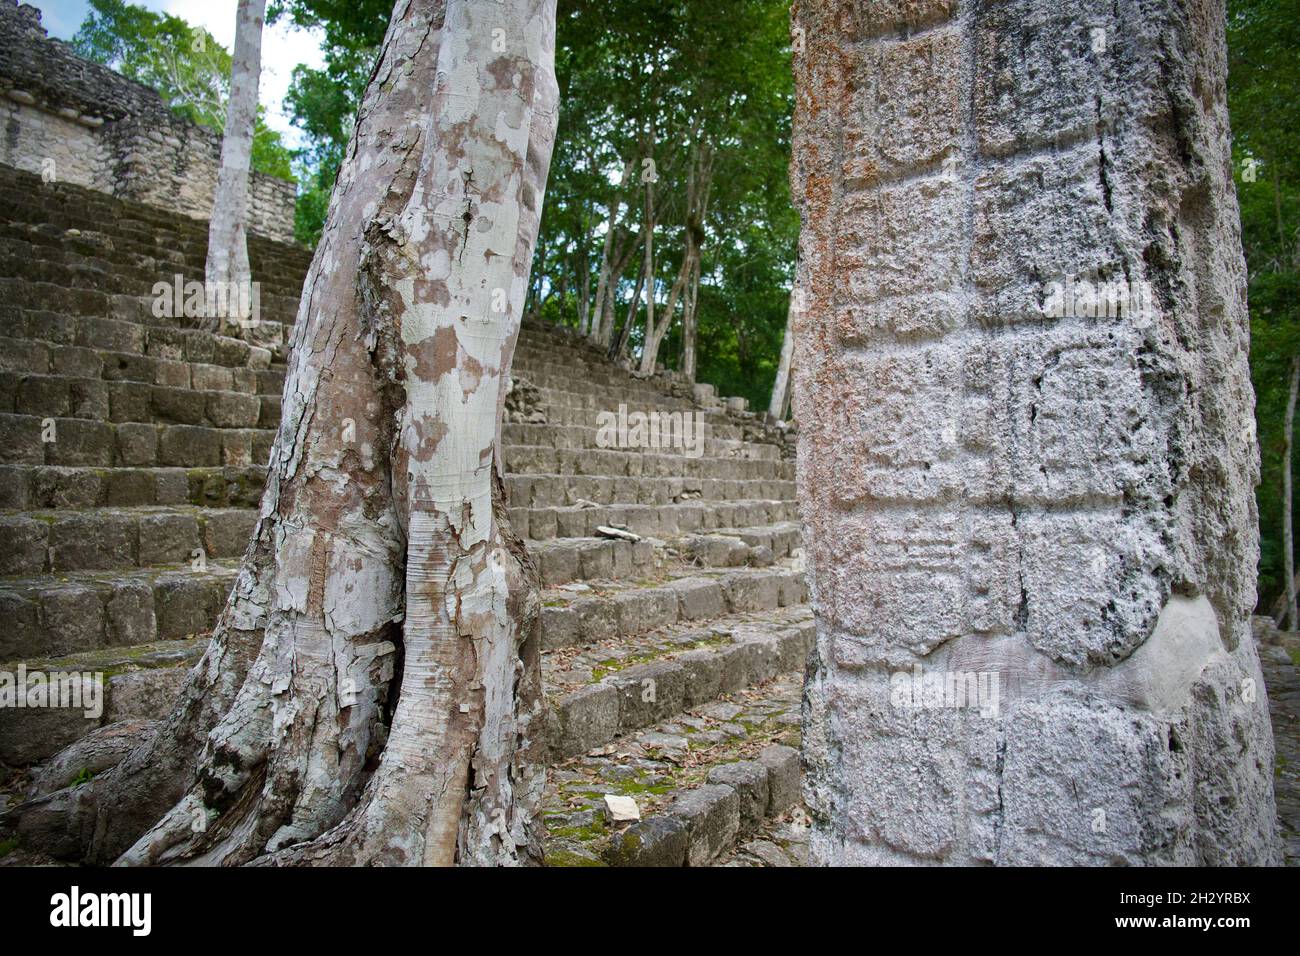 Calakmul, Mayan ruins, Mexico Stock Photo